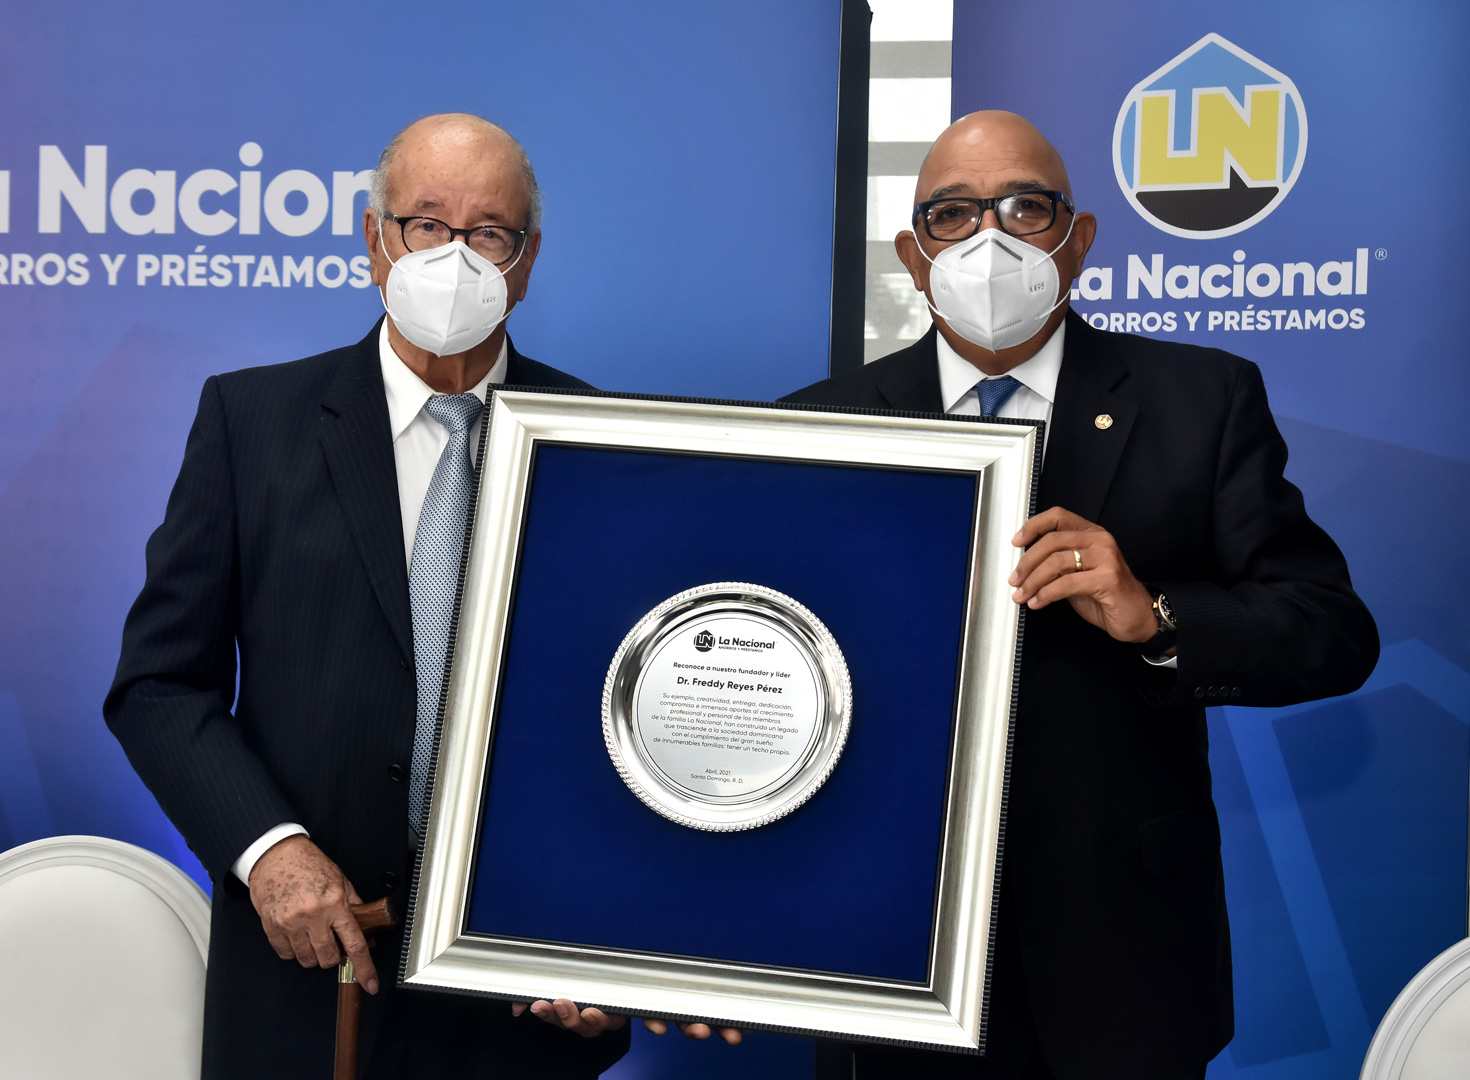 La Nacional reconoce la figura y trayectoria del Dr. Freddy A. Reyes.